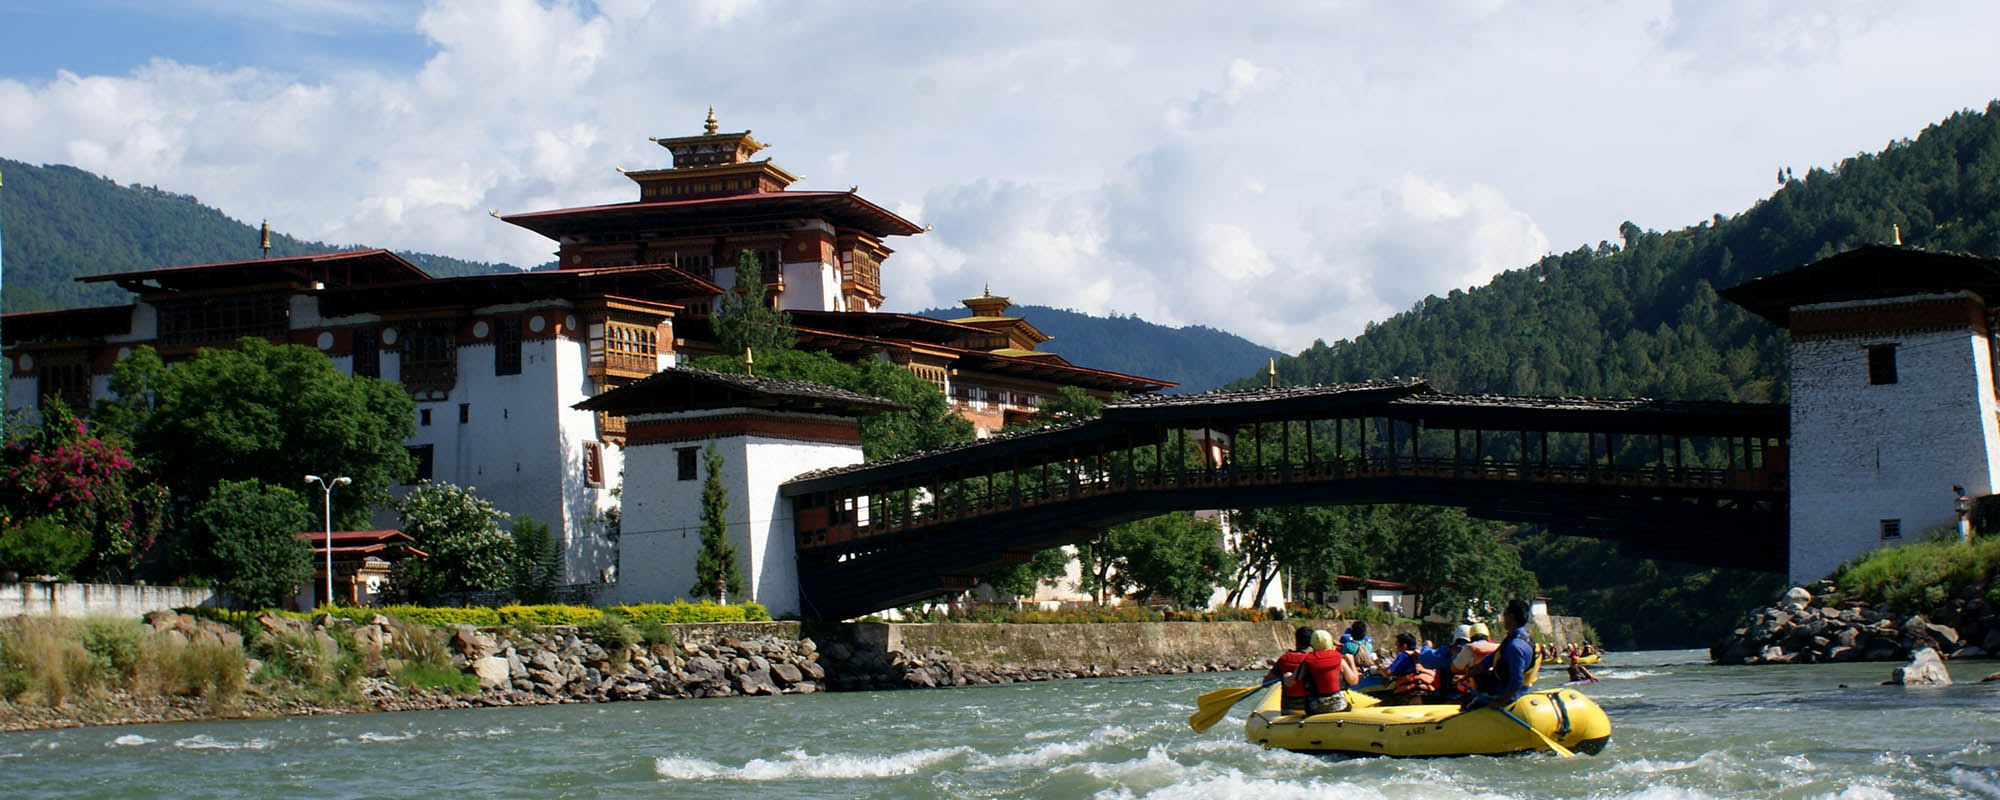 Bhutan Rafting and kayaking Trekking